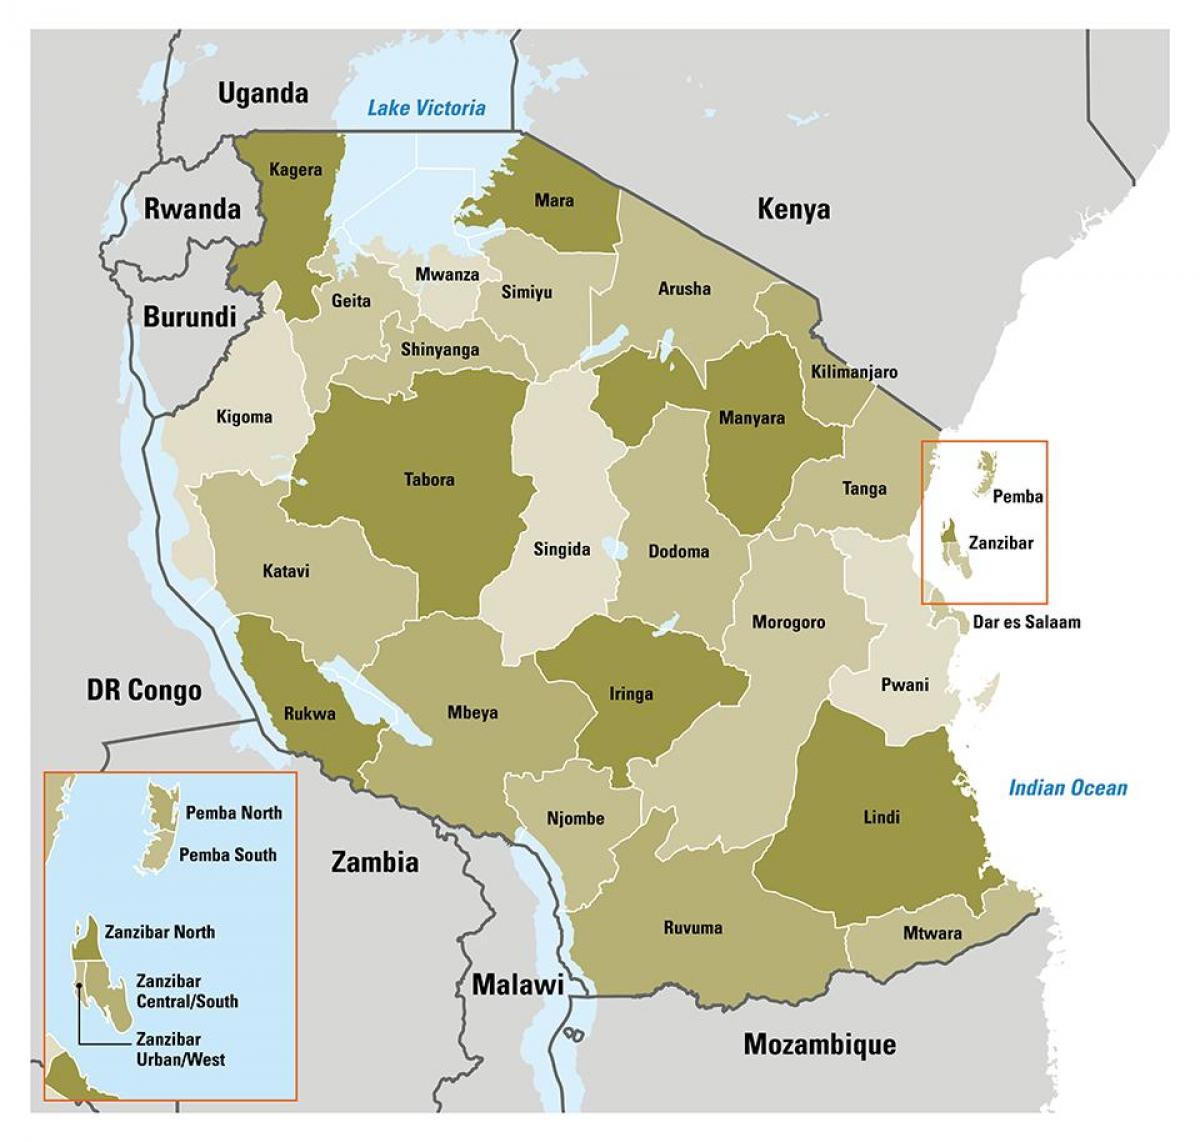 zemljevid tanzanija prikazuje regije